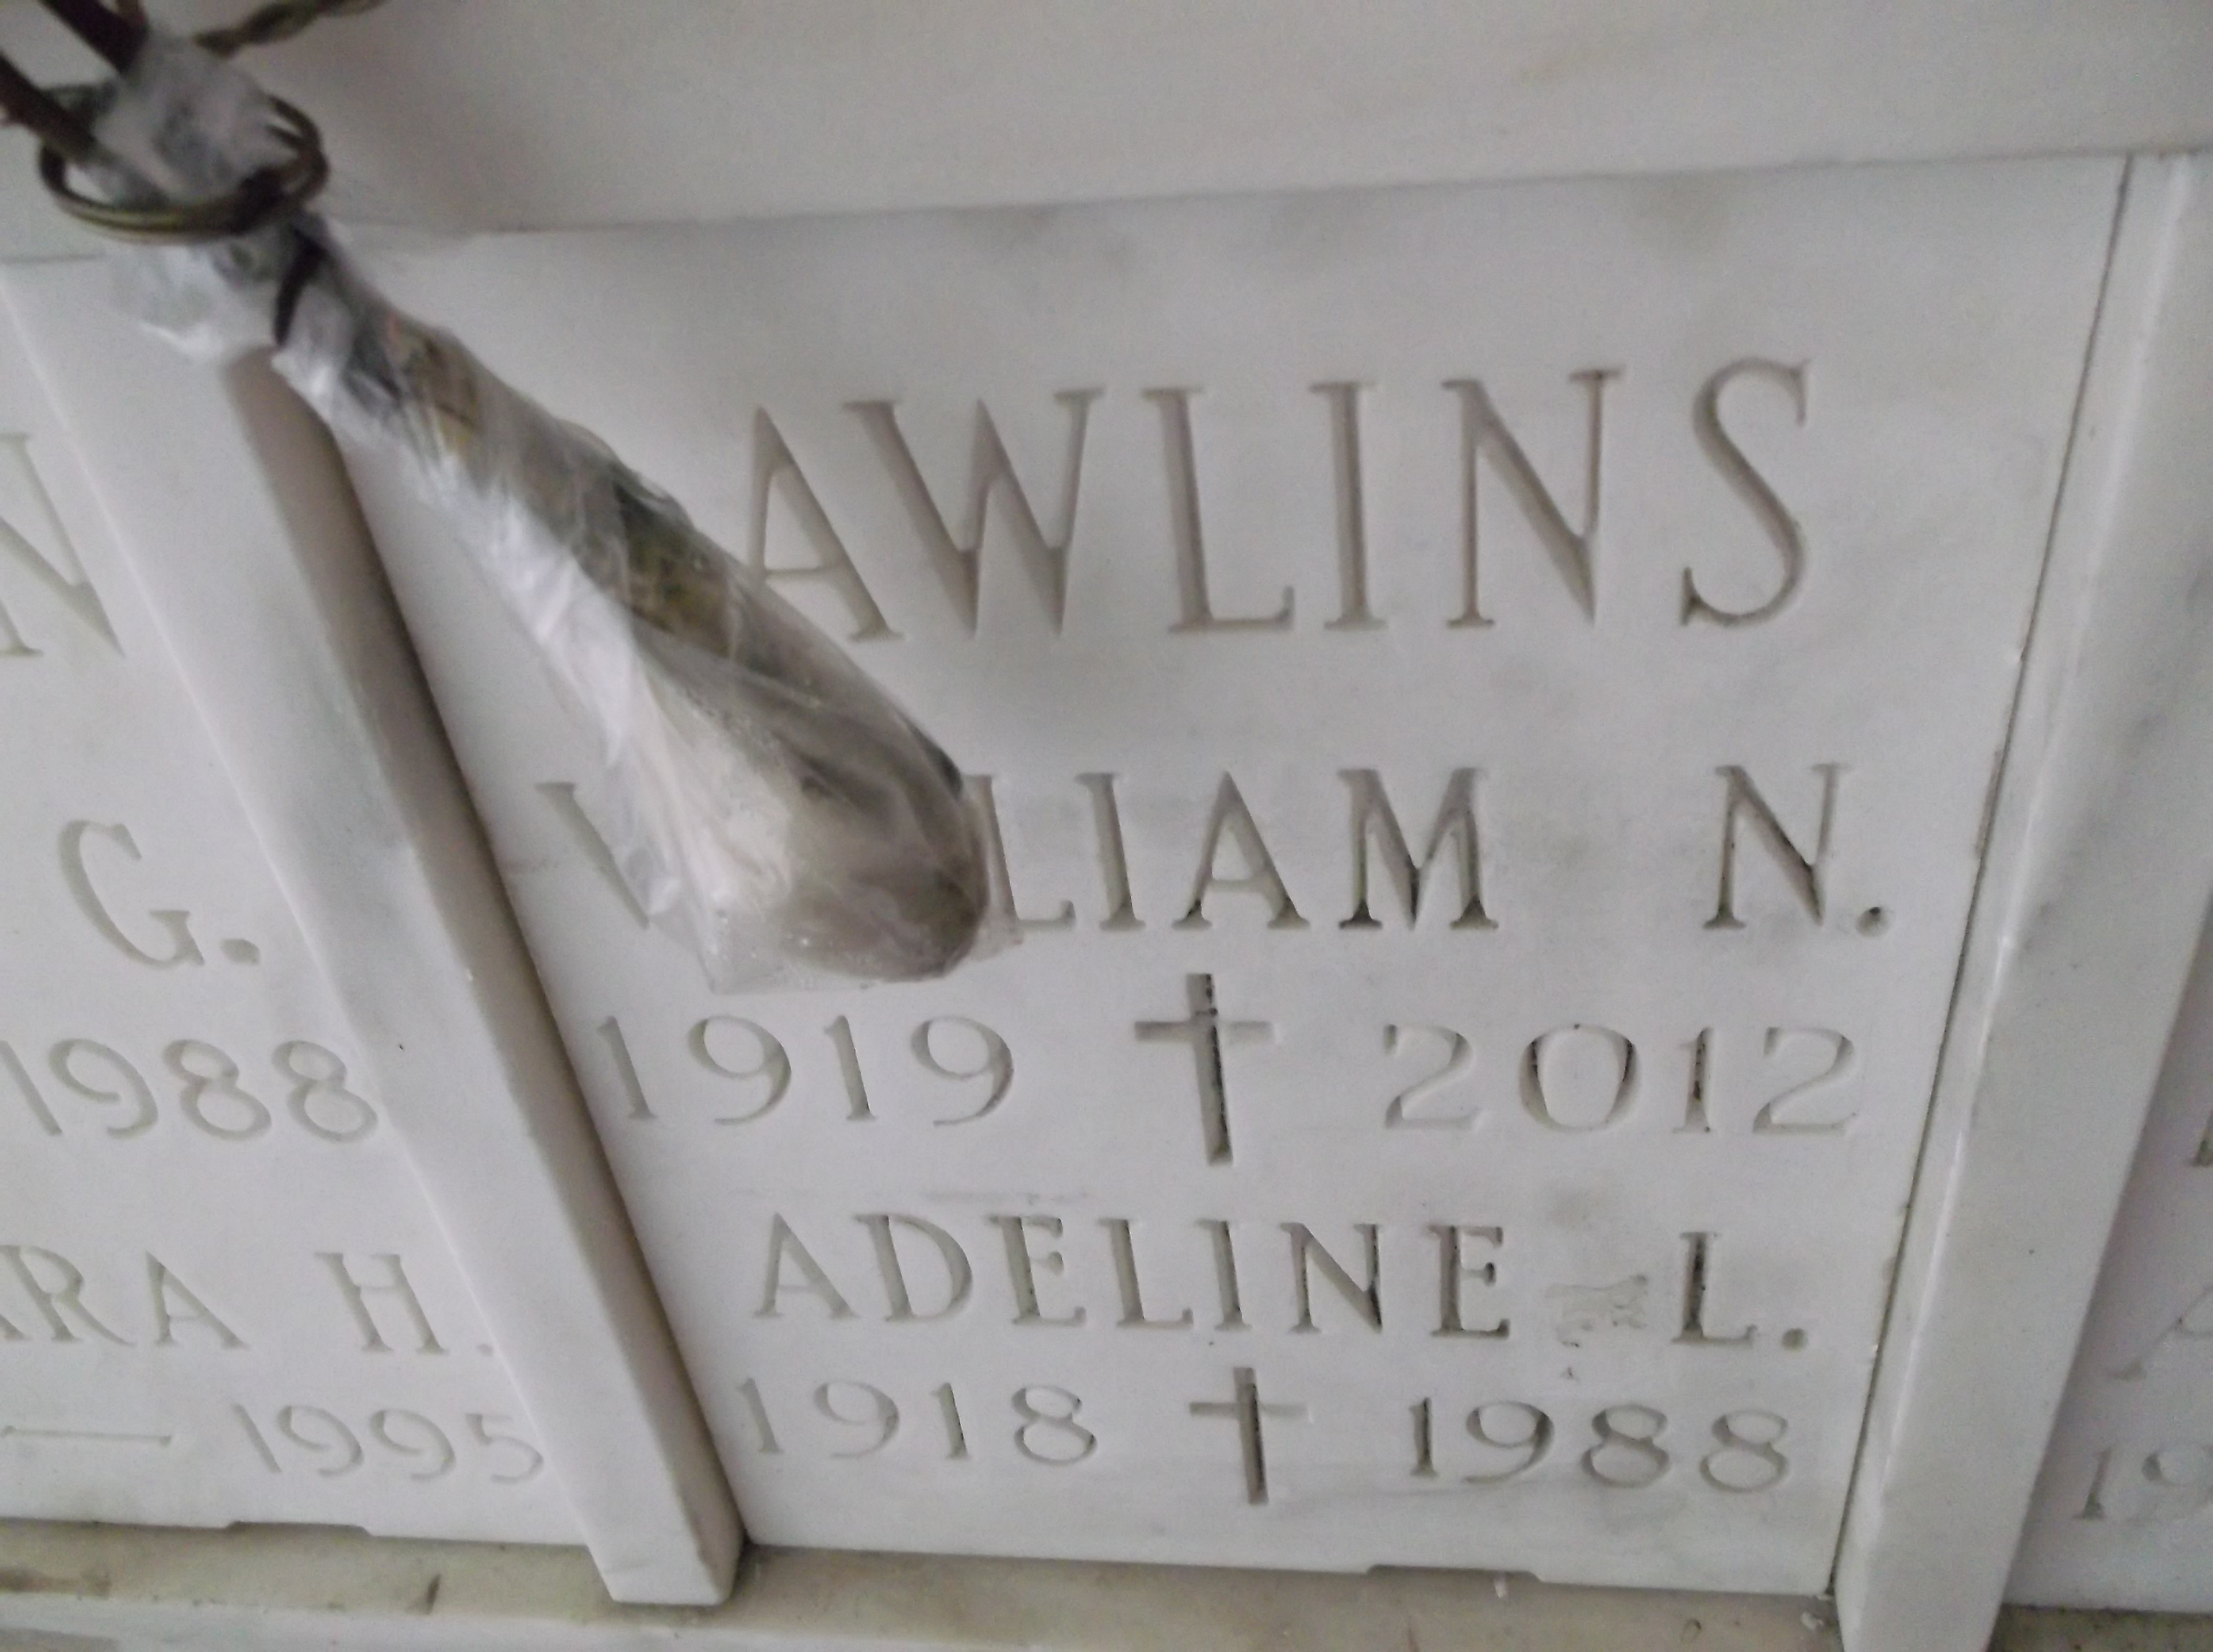 William N Rawlins